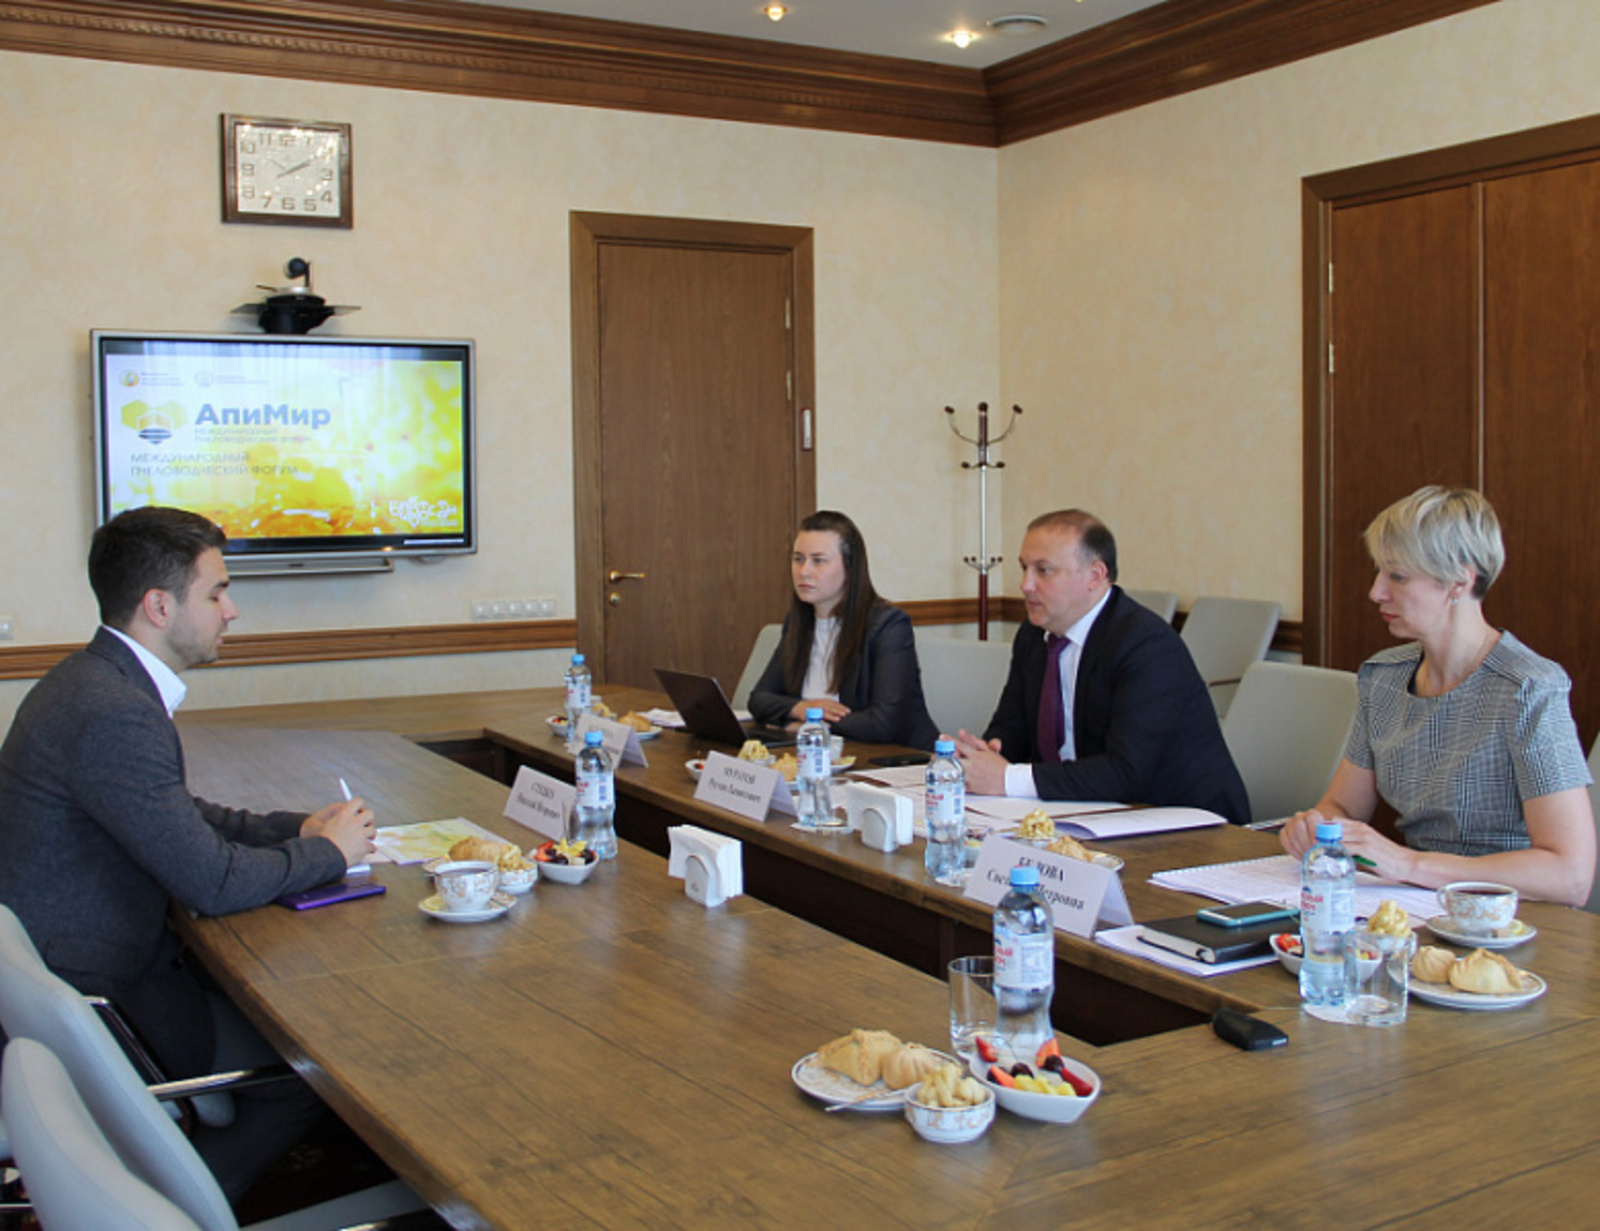 Башкирия и Приморский край договорились усилить межрегиональную кооперацию